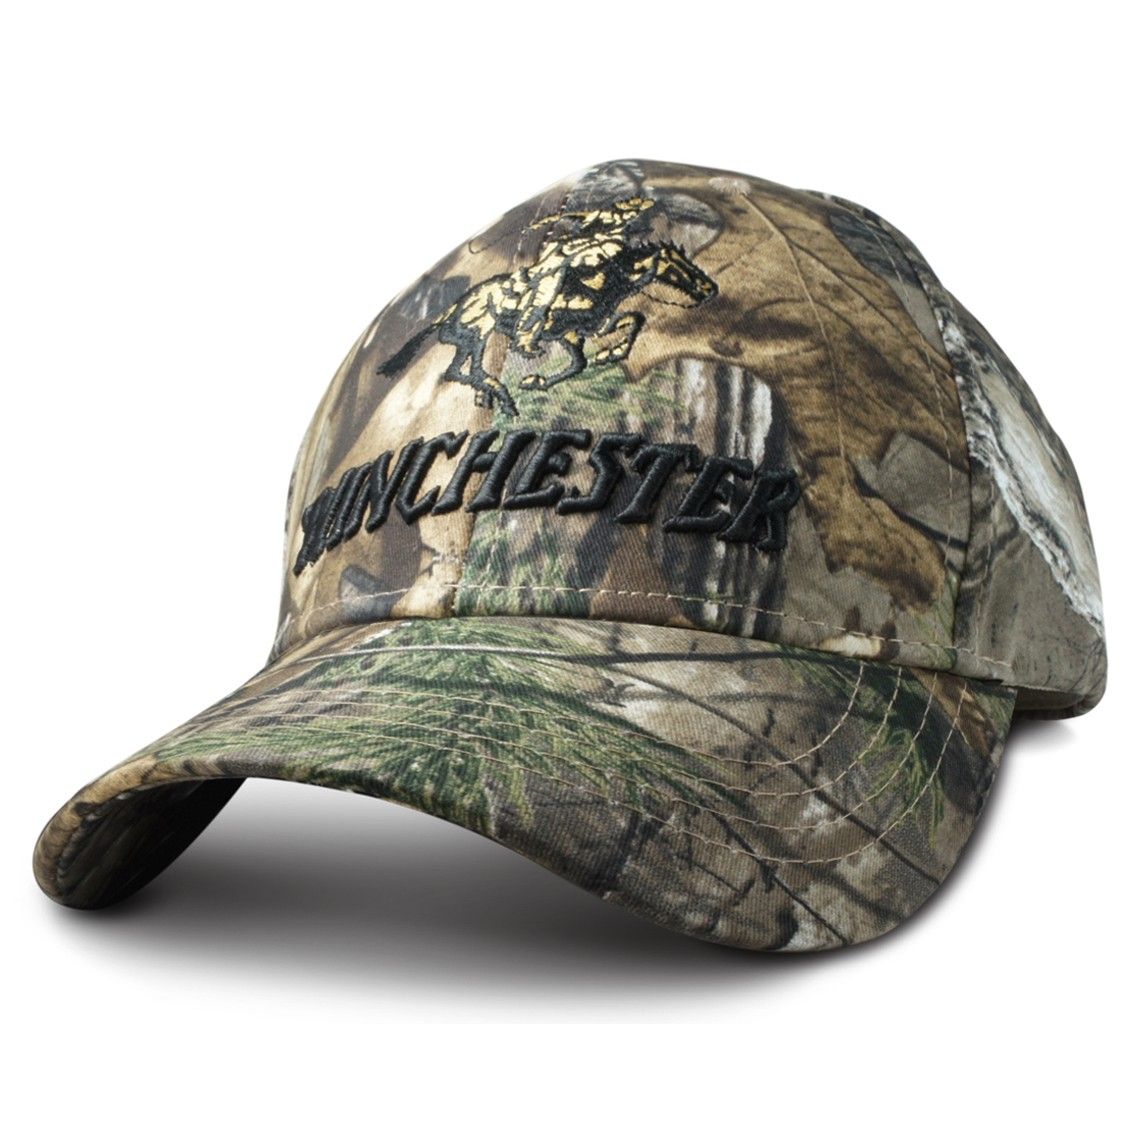 ウインチェスター リアルツリーカモ 狩猟 射撃 ミリタリー シューティング キャップ 帽子 コットン100% ワンサイズフリー